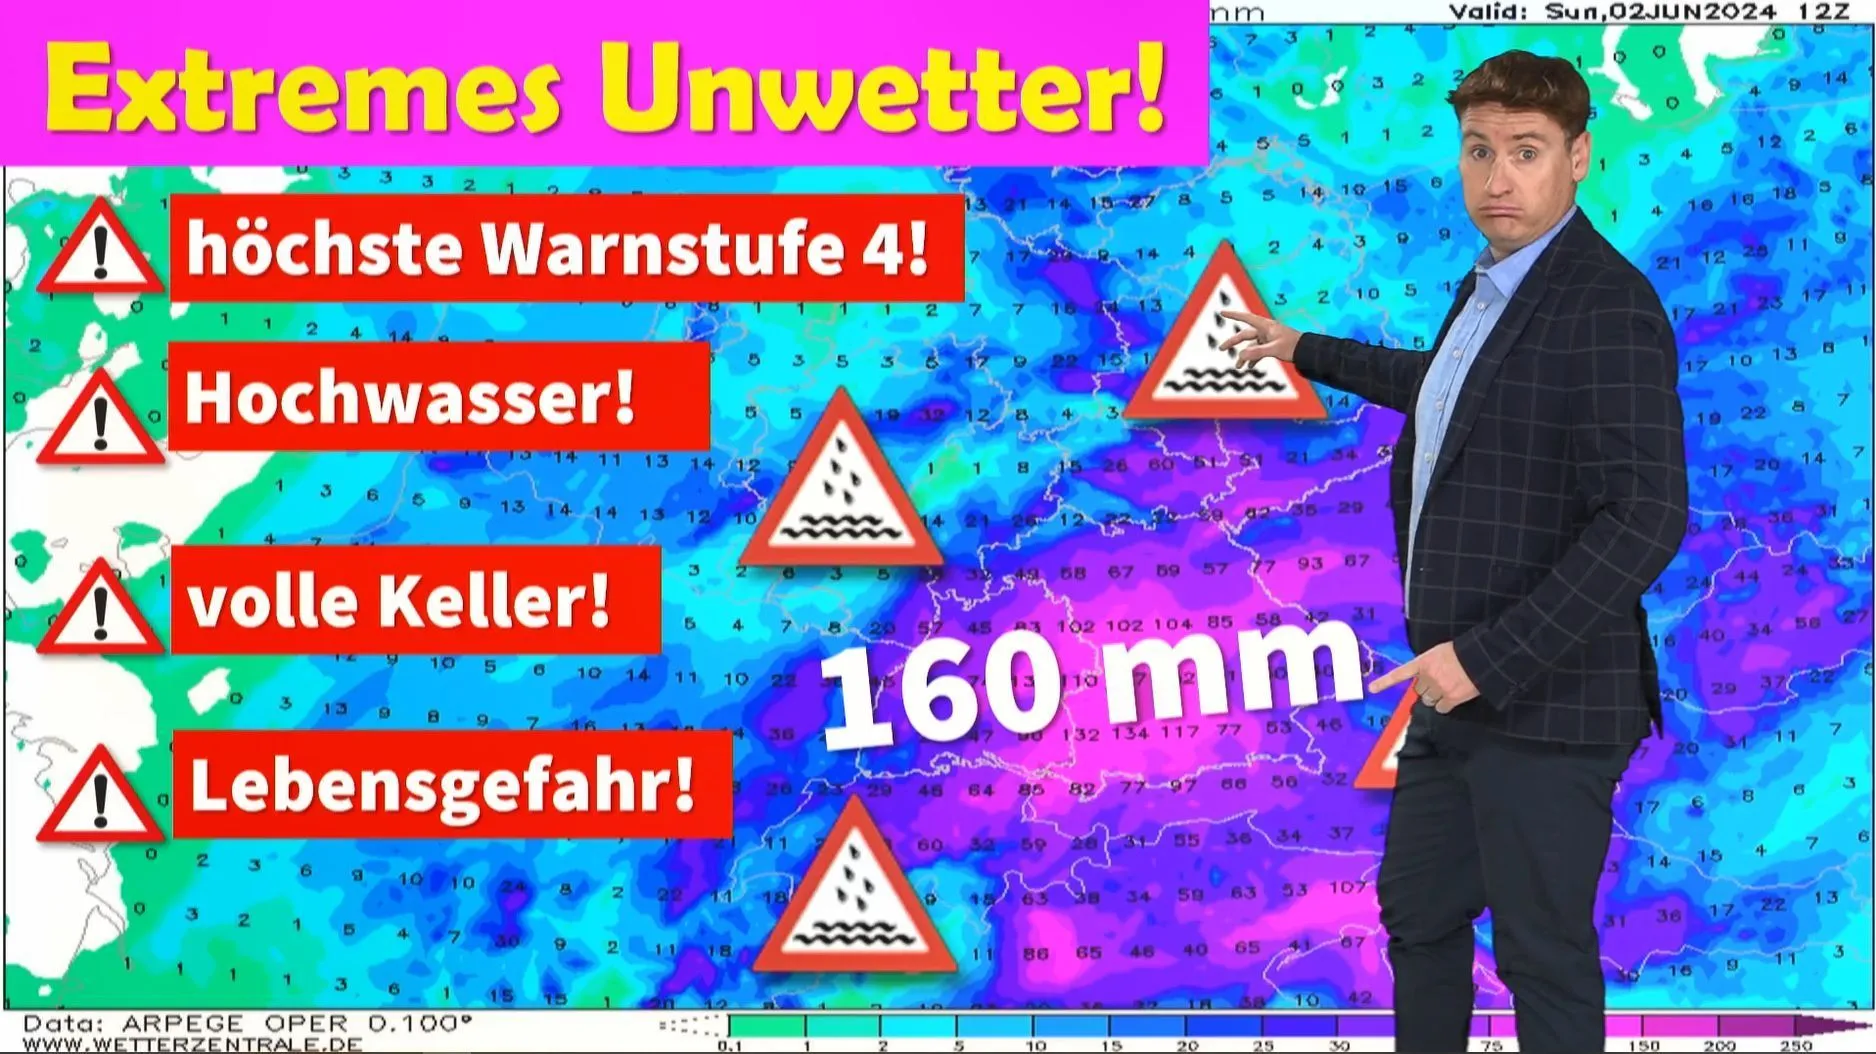 Höchste Warnstufe! Wetterexperte Dominik Jung rechnet mit schwerem Hochwasser im Süden von Deutschland!